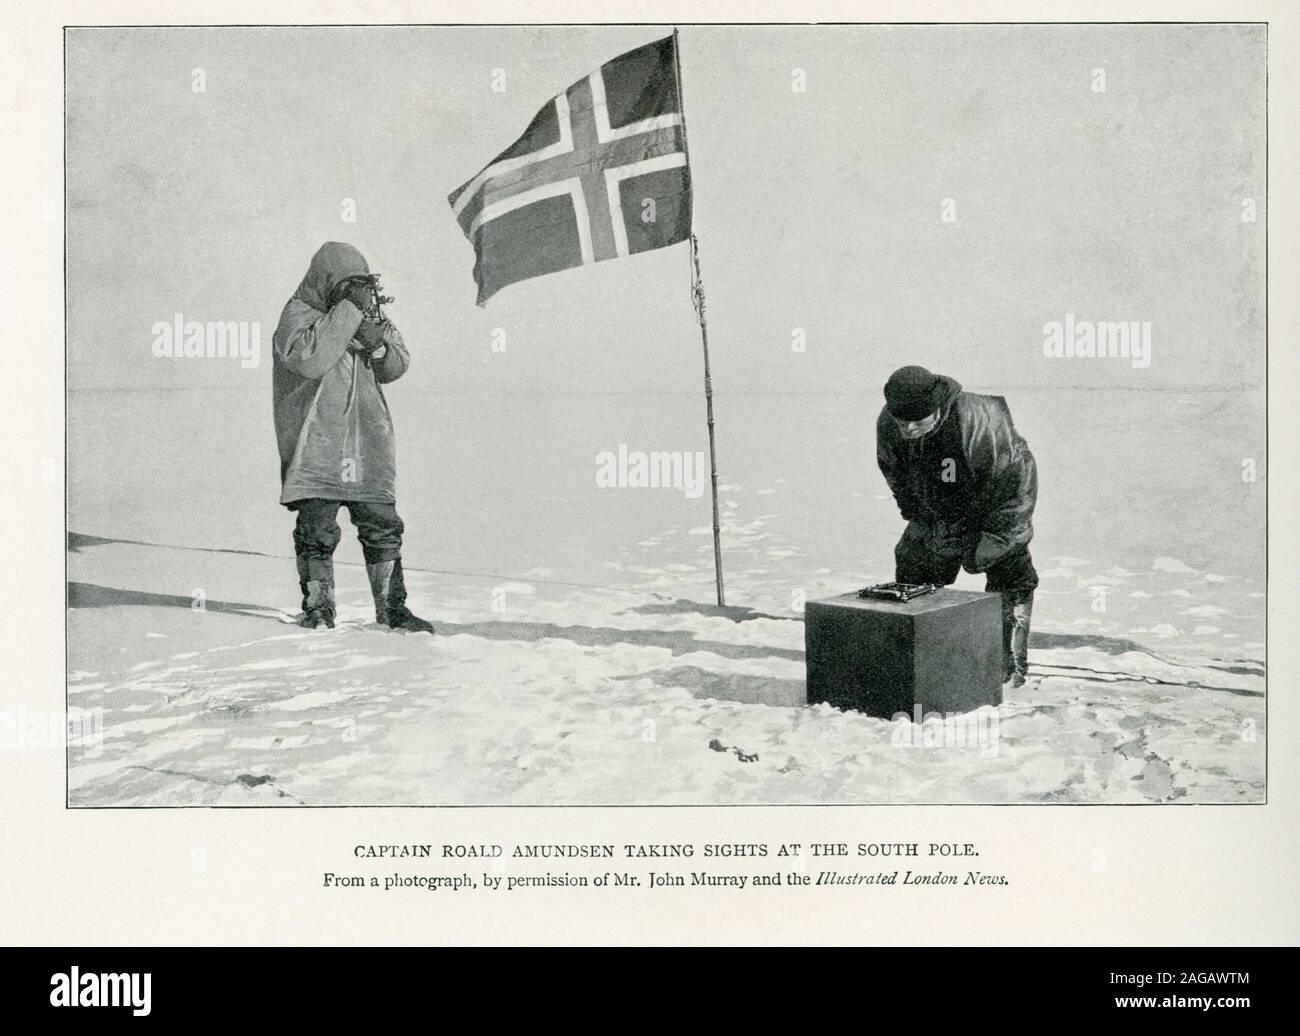 Dieses Foto zeigt Kapitän Roald Amundsen die Sehenswürdigkeiten am Südpol. Die Beschriftung ist weiterhin von einem Foto, mit freundlicher Genehmigung von Herrn John Murray und der Illustrated London News. Amundsen war eine norwegische Forscher der Polargebiete und eine Schlüsselfigur der heroischen Zeitalter der Antarktischen Erforschung. Er führte die erste Expedition die Nord-West-Passage über das Meer zu überqueren, von 1903 bis 1906, und die erste Expedition zum Südpol 1911. Stockfoto